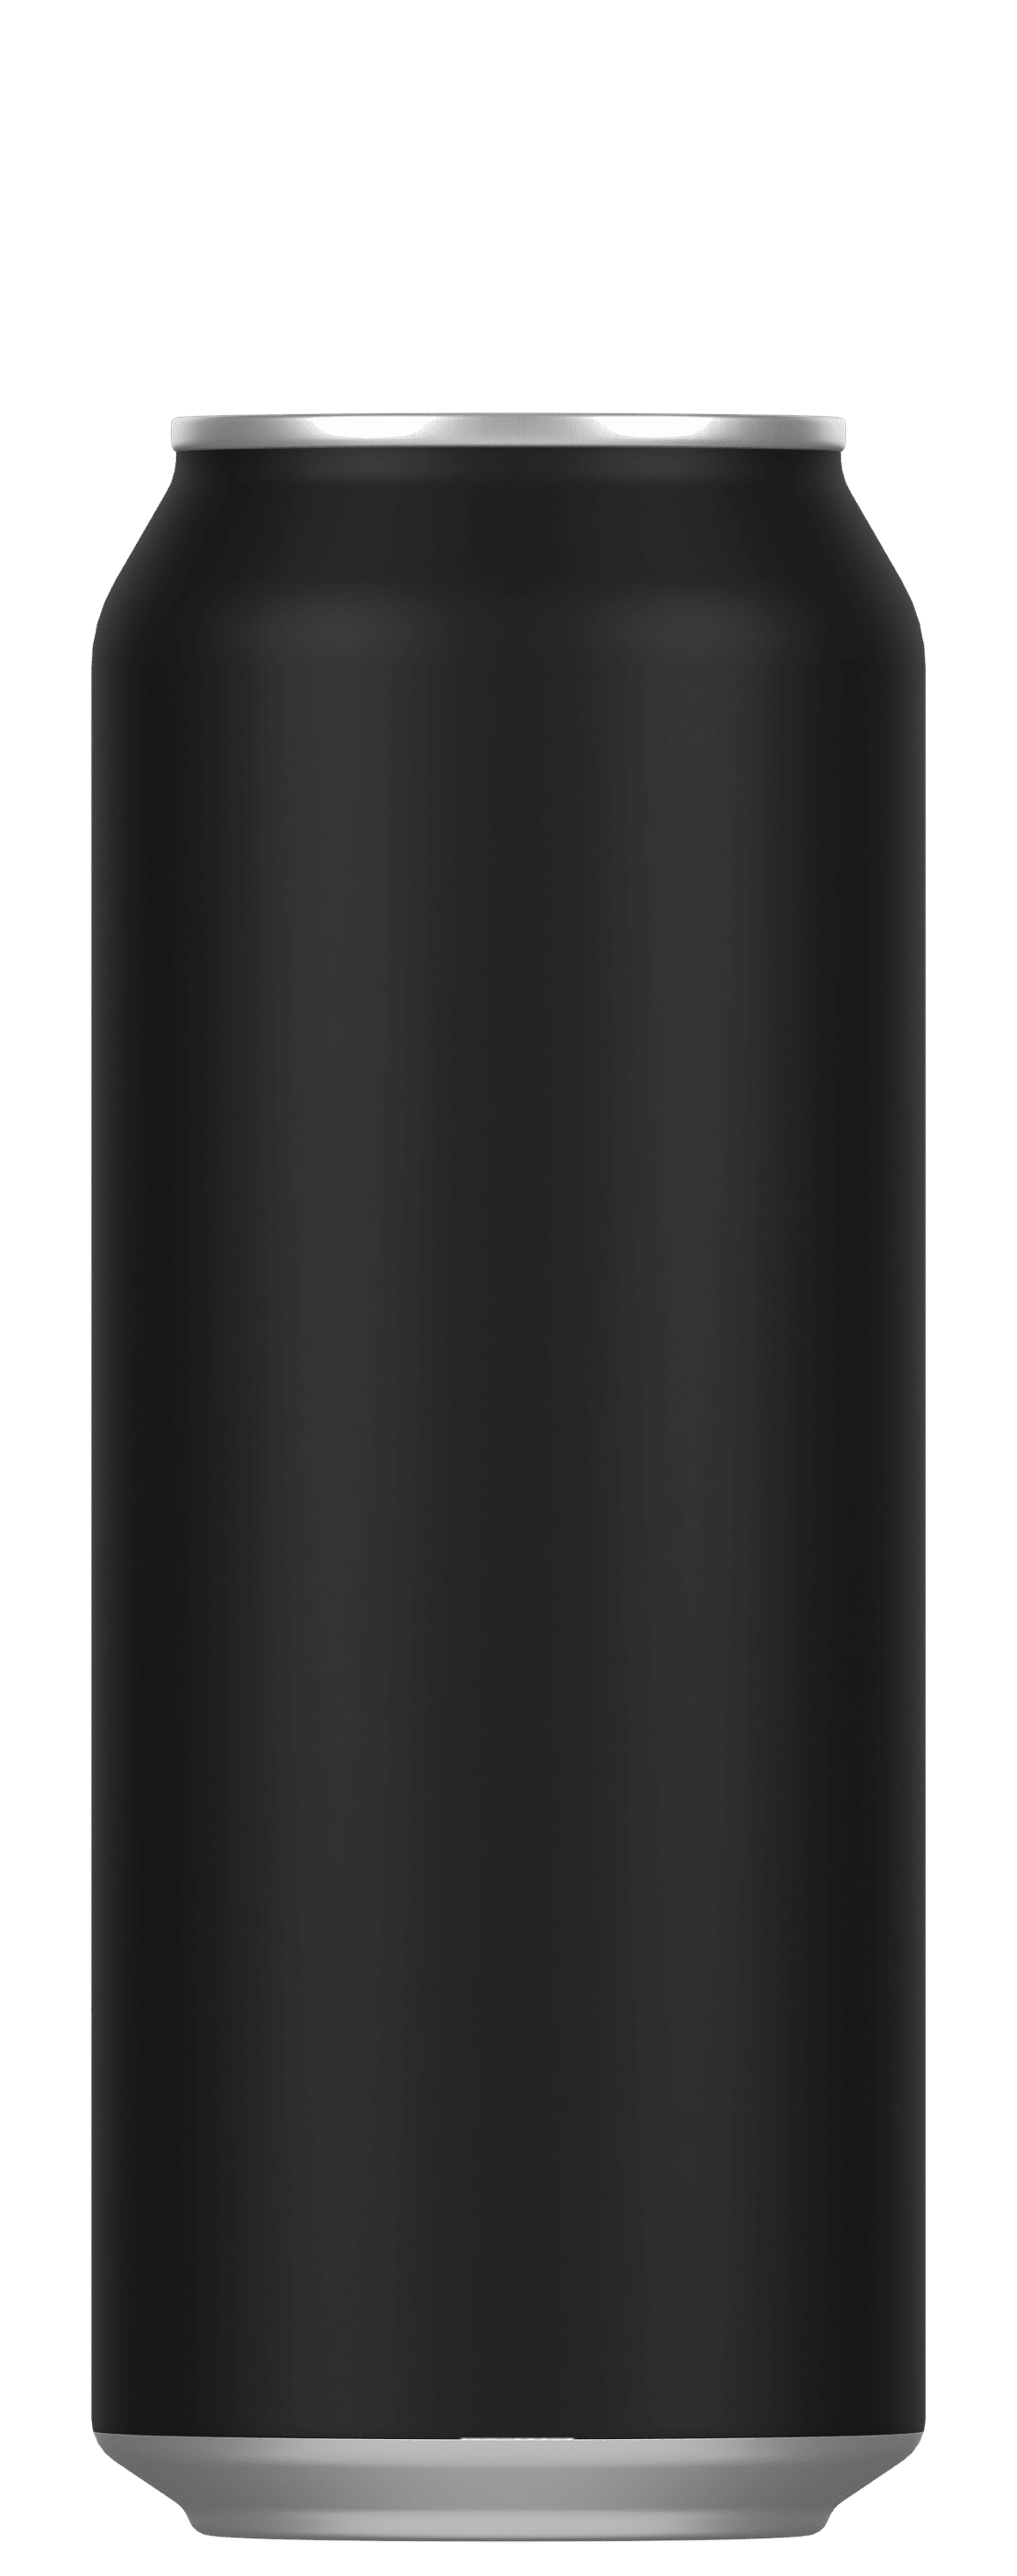 Hliníková pivní plechovka 500 ml, bez víčka, matně černá